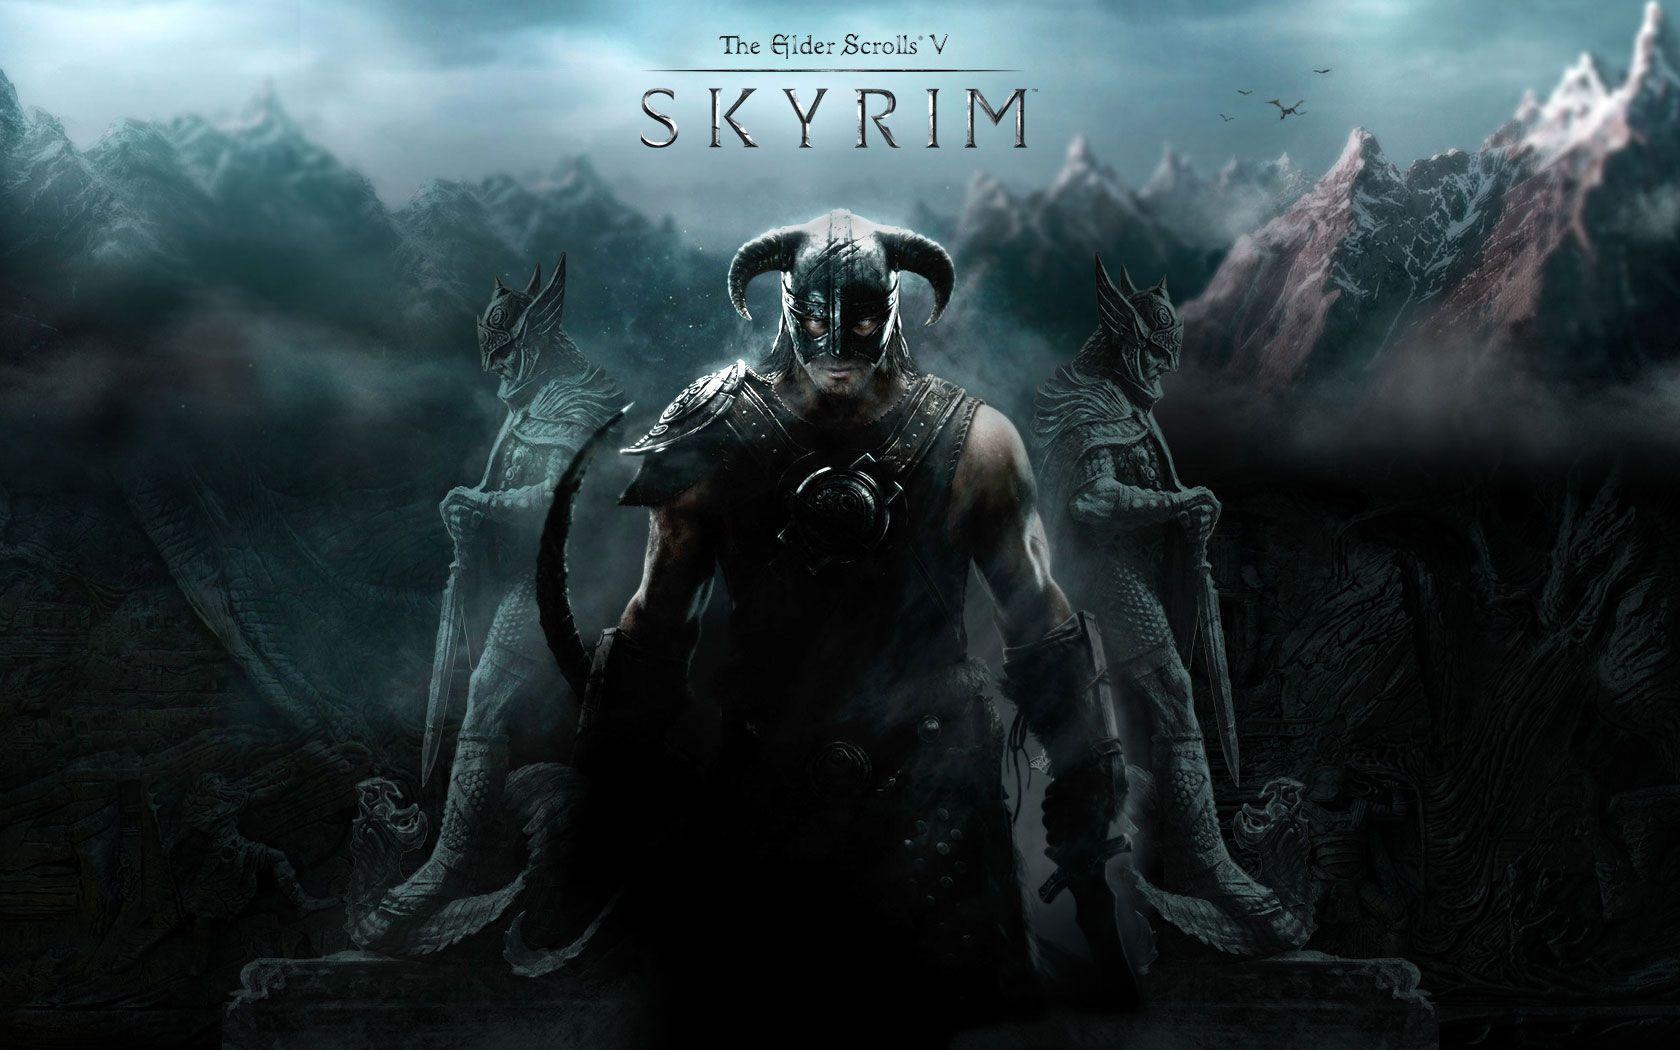 The Elder Scrolls V: Skyrim. PCGamesArchive